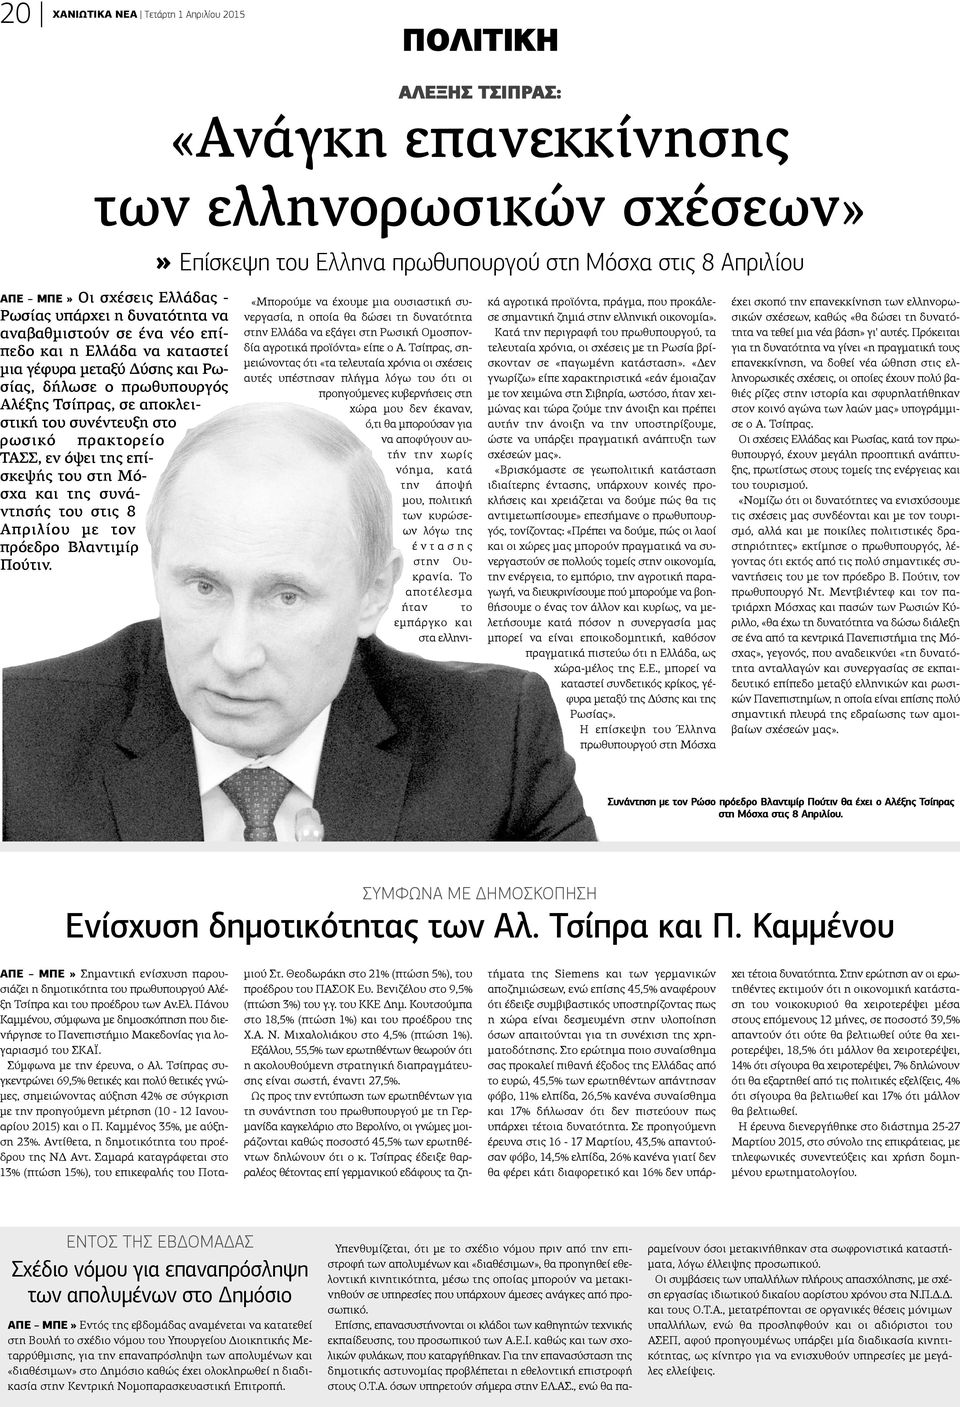 συνέντευξη στο ρωσικό πρακτορείο ΤΑΣΣ, εν όψει της επίσκεψής του στη Μόσχα και της συνάντησής του στις 8 Απριλίου με τον πρόεδρο Βλαντιμίρ Πούτιν.